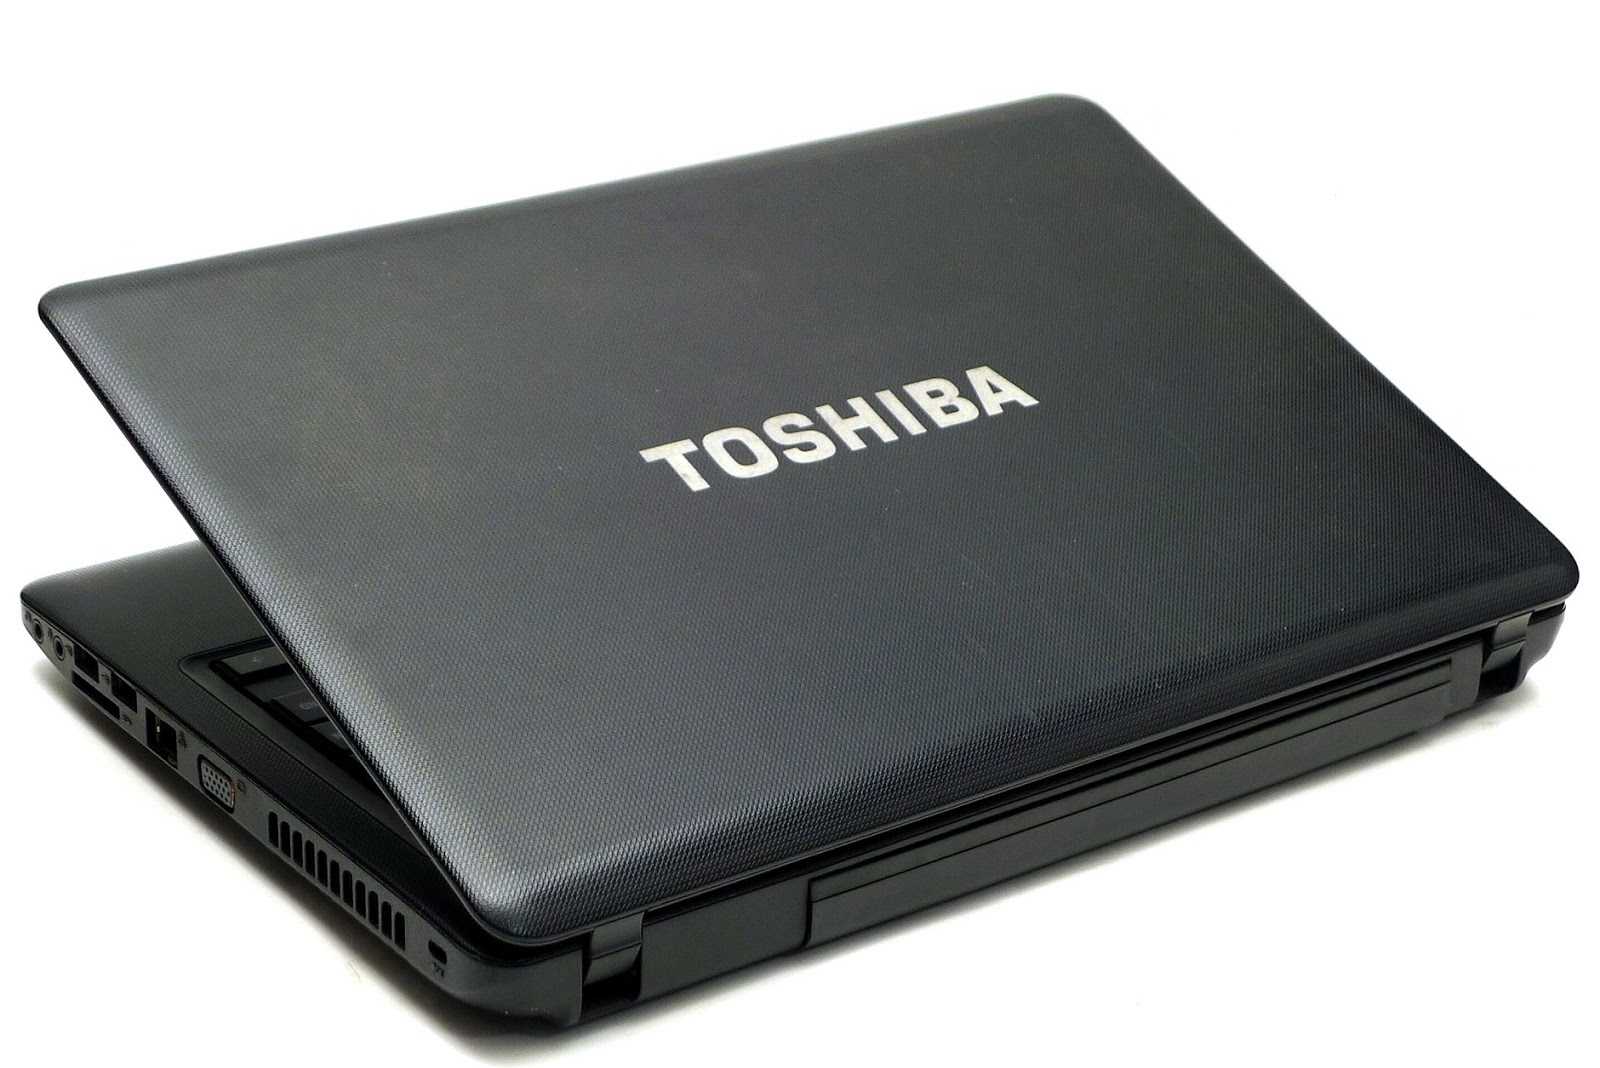 Ноутбук Toshiba Satellite U845W-S410 - подробные характеристики обзоры видео фото Цены в интернет-магазинах где можно купить ноутбук Toshiba Satellite U845W-S410